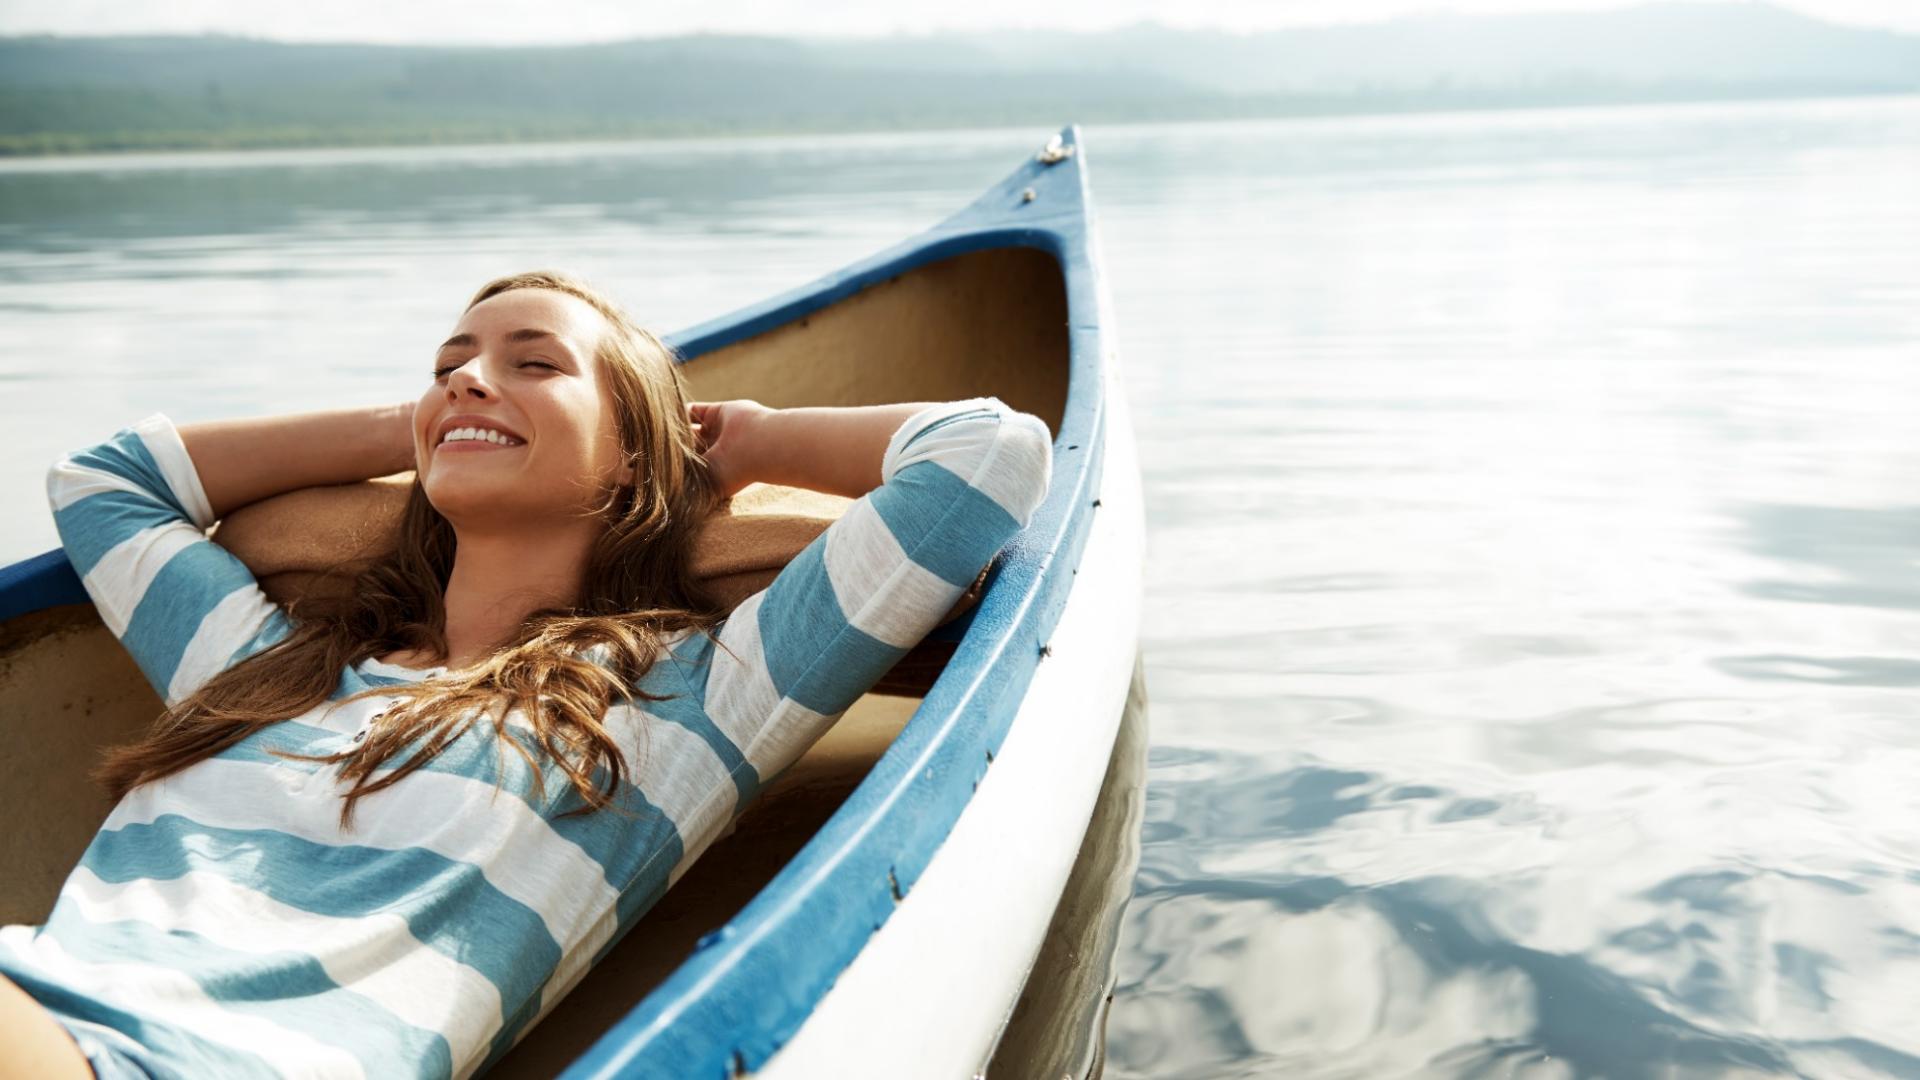 Eine glückliche, junge Frau liegt entspannt in einem kleinen Boot, das auf einem See schwimmt.